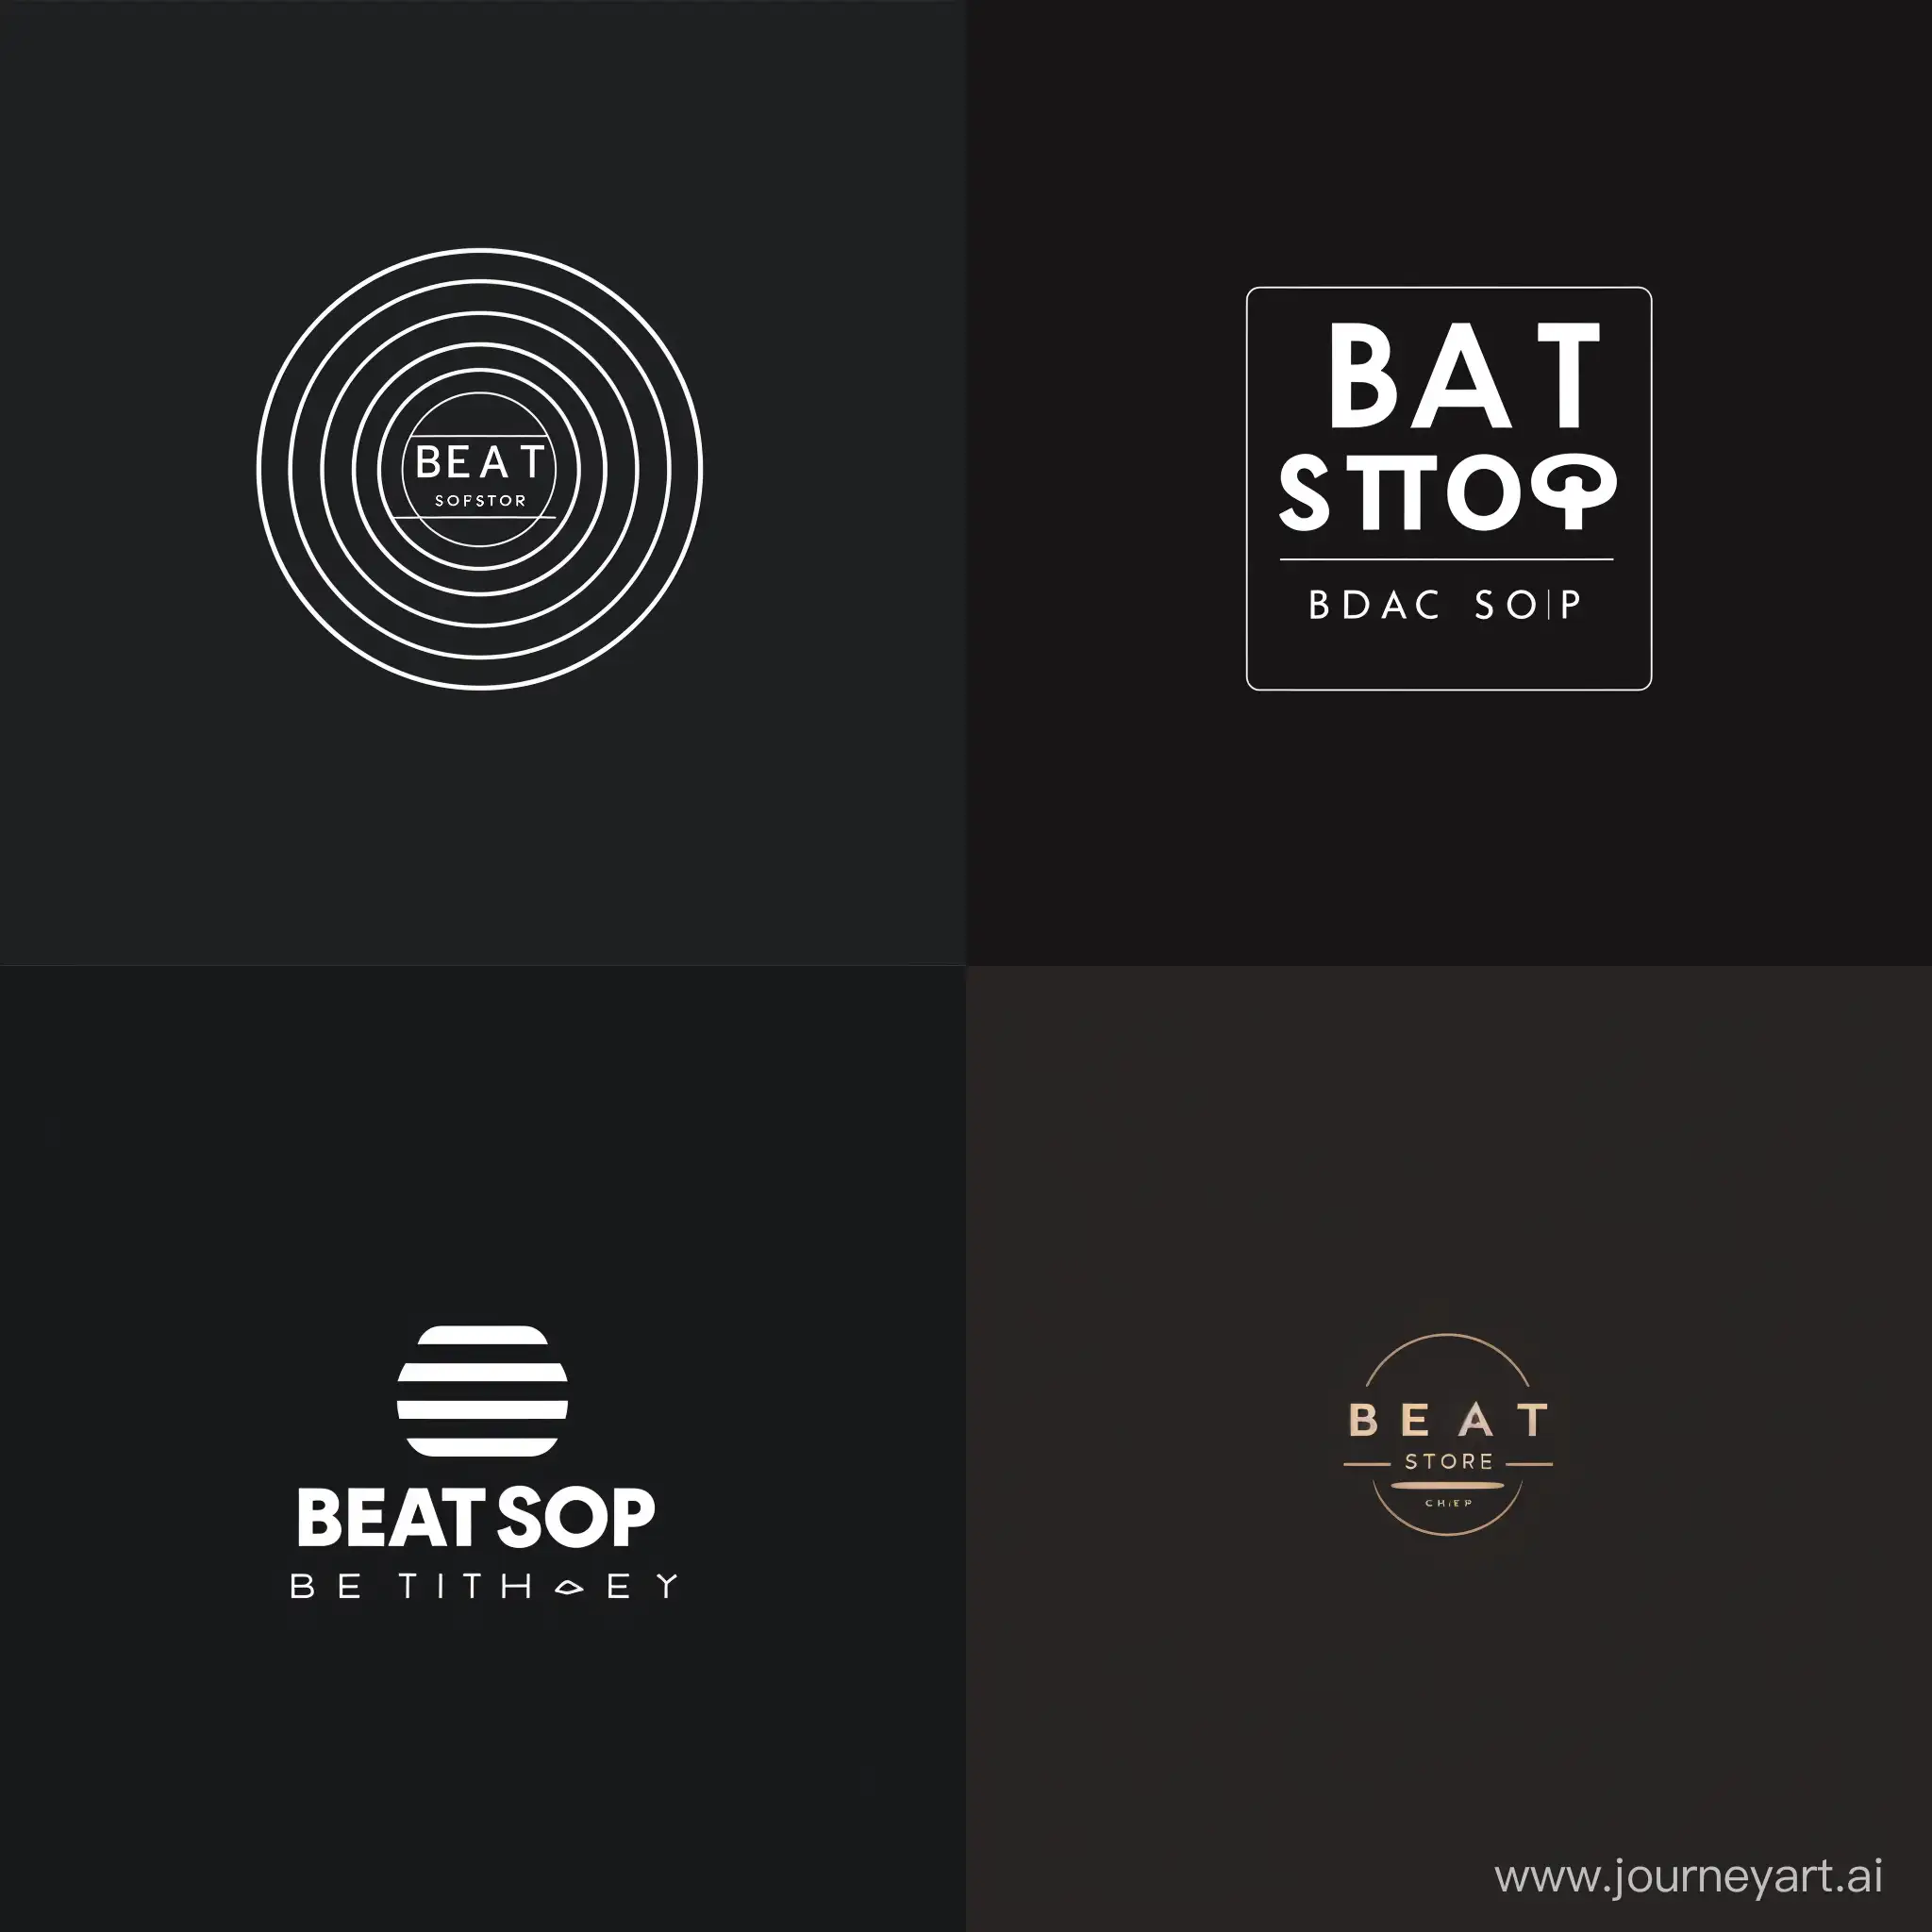 создай минималистичный логотип в для фирмы "Beat Store"